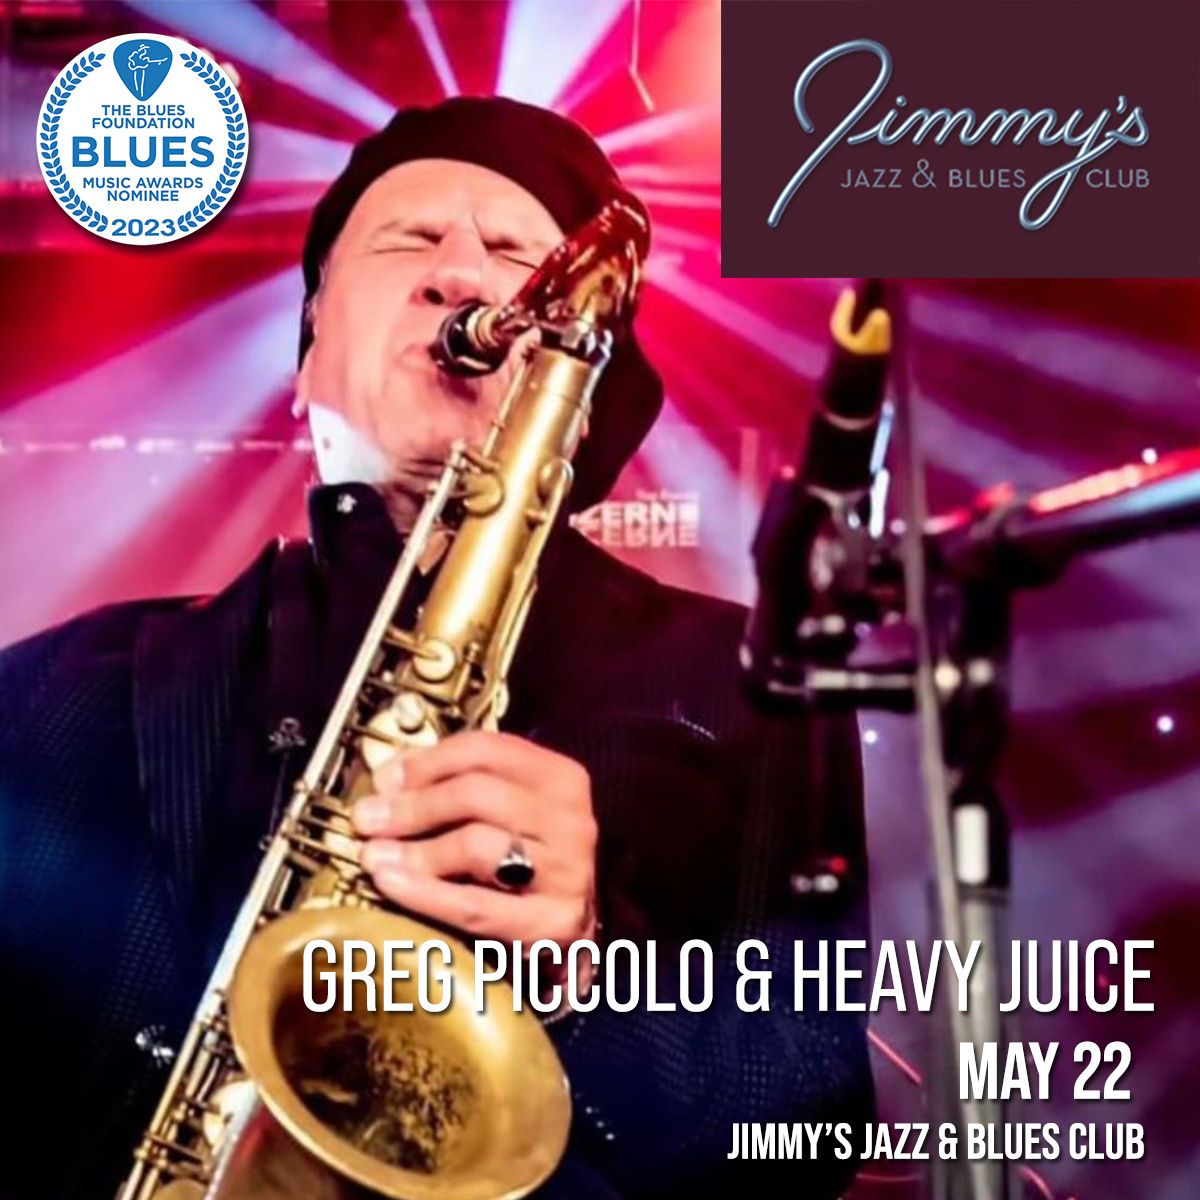 Jimmy\u2019s Jazz & Blues meets Greg Piccolo & Heavy Juice!